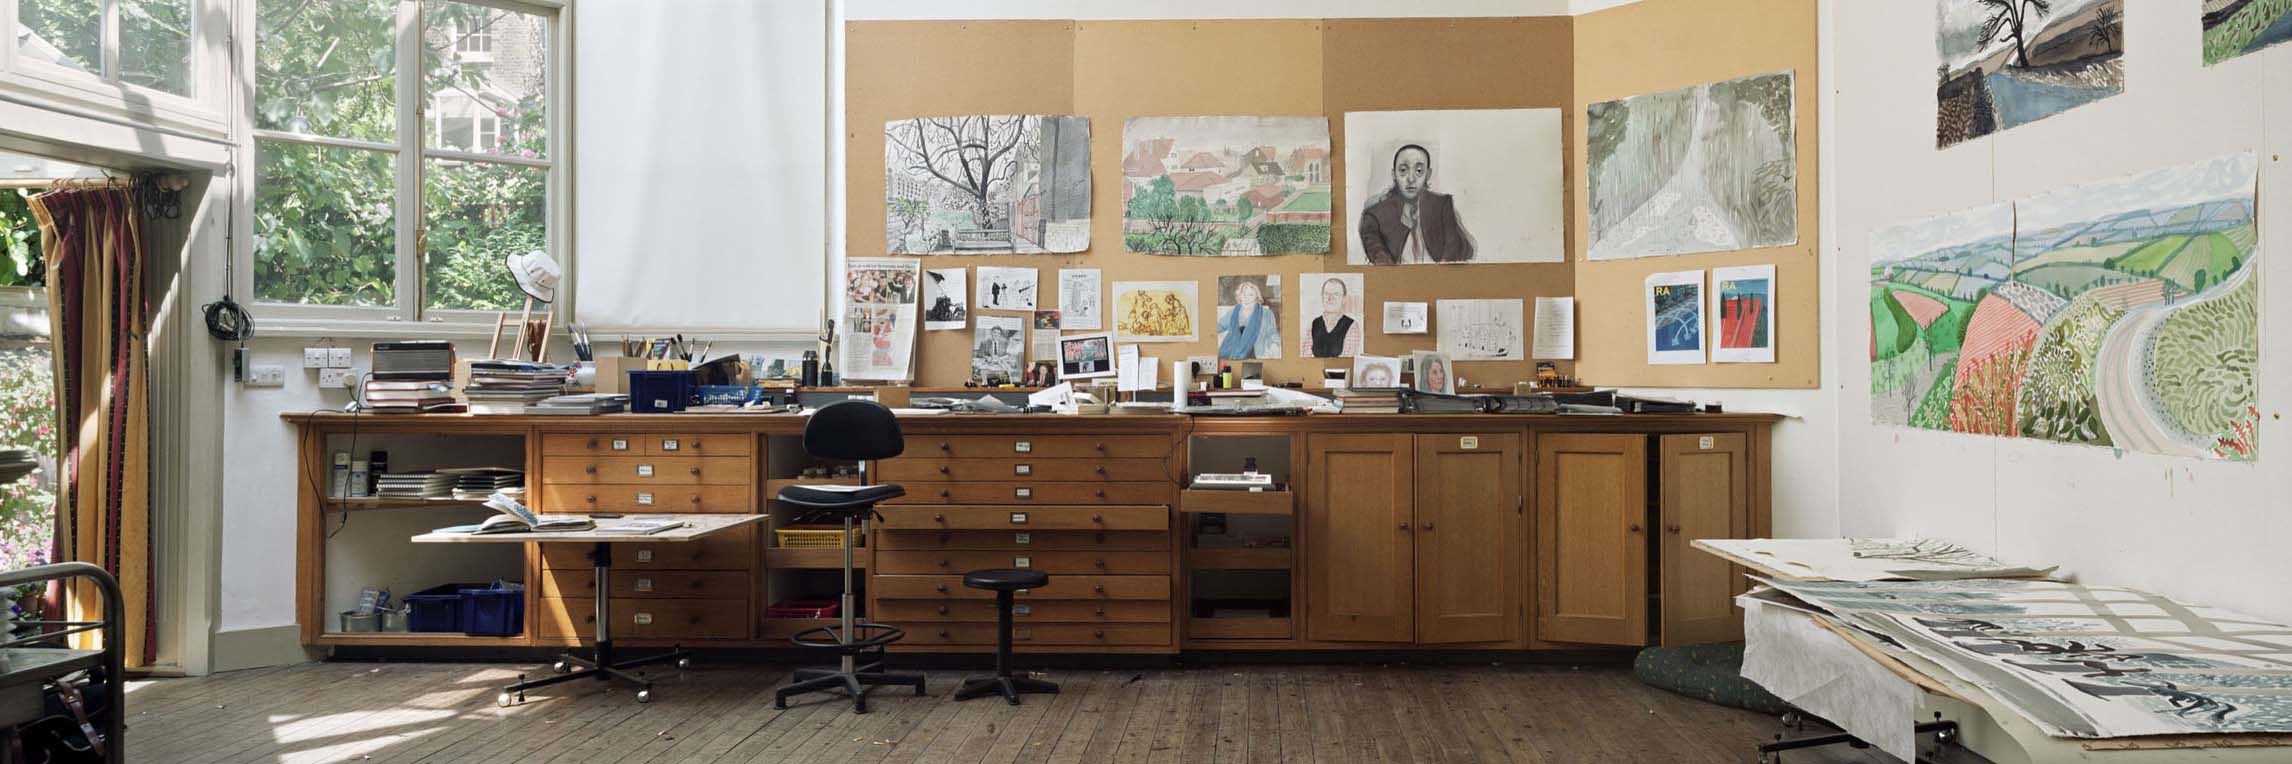 Image de l'atelier de l'artiste David Hockney, peintre portraitiste et paysagiste par Gautier Deblonde